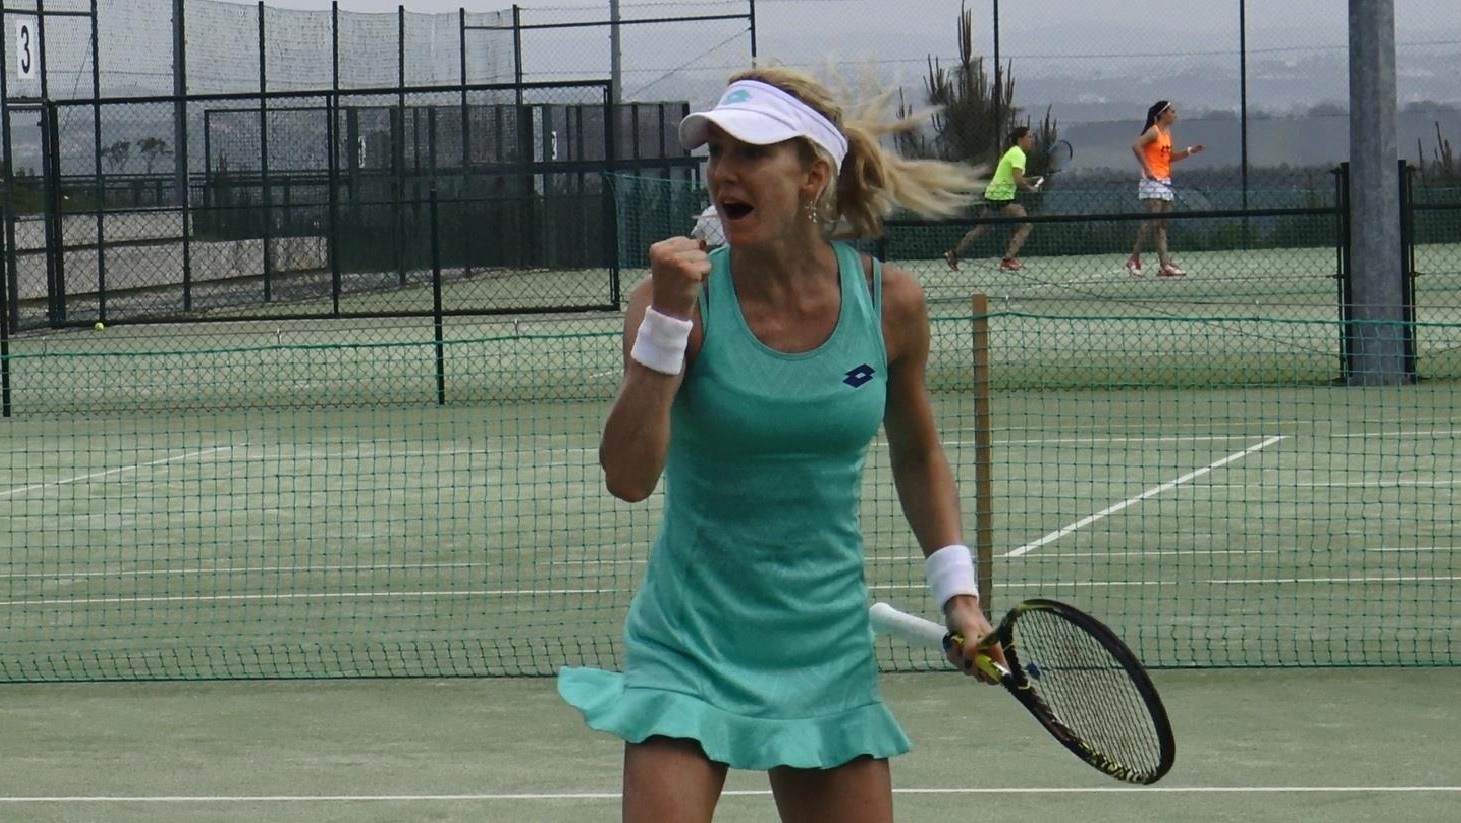 2.º Óbidos Ladies Open. Urszula Radwanska na primeira final em três anos